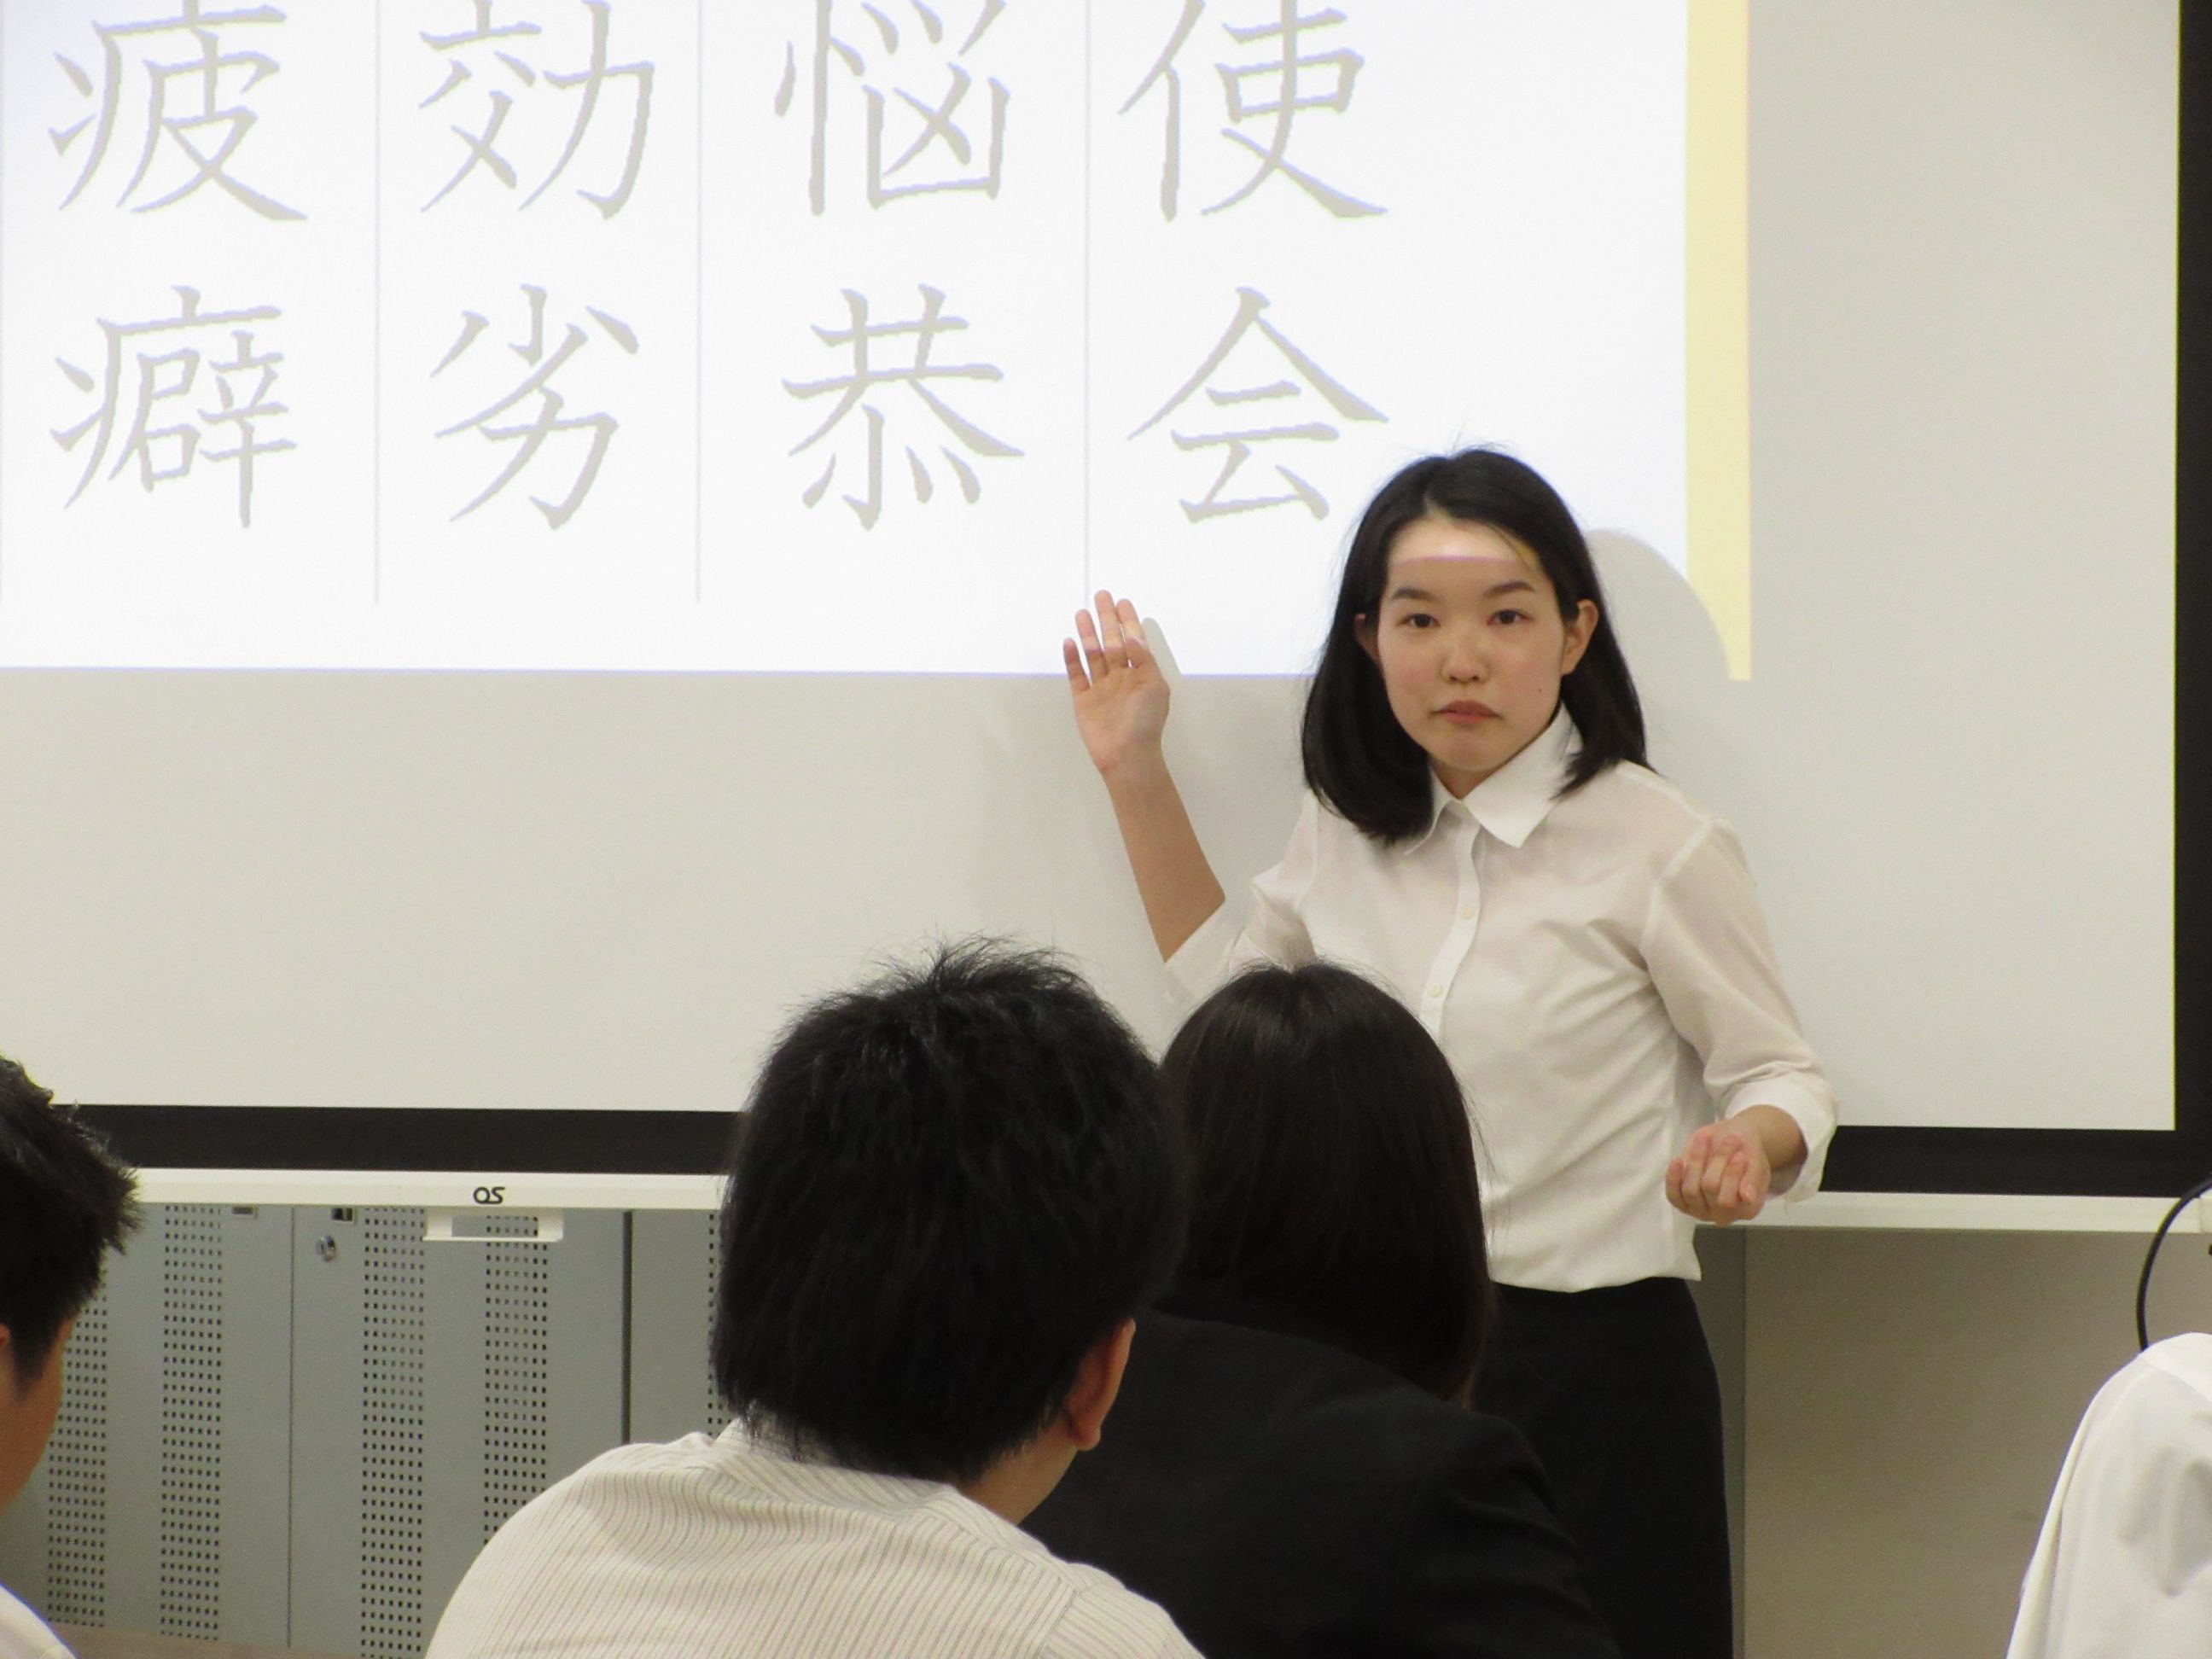 教育実習直前 国語科教職課程のみなさんが模擬授業に取り組んでいます 日文のブログ 沖縄国際大学